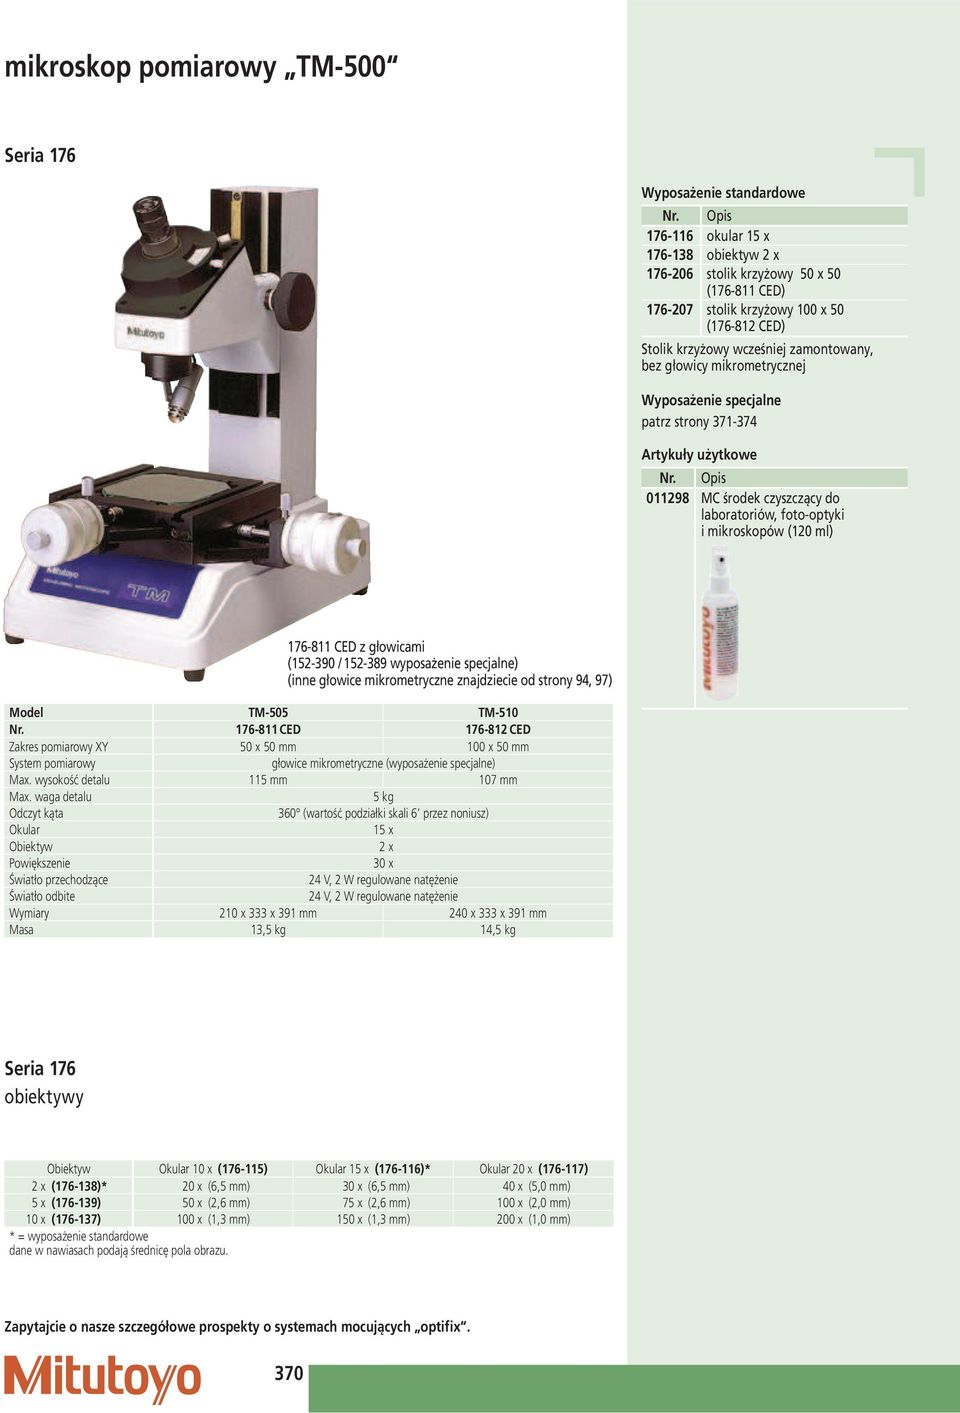 (120 ml) 176-811 CED z głowicami (152-390 / 152-389 wyposażenie specjalne) (inne głowice mikrometryczne znajdziecie od strony 94, 97) Model TM-505 TM-510 Nr.